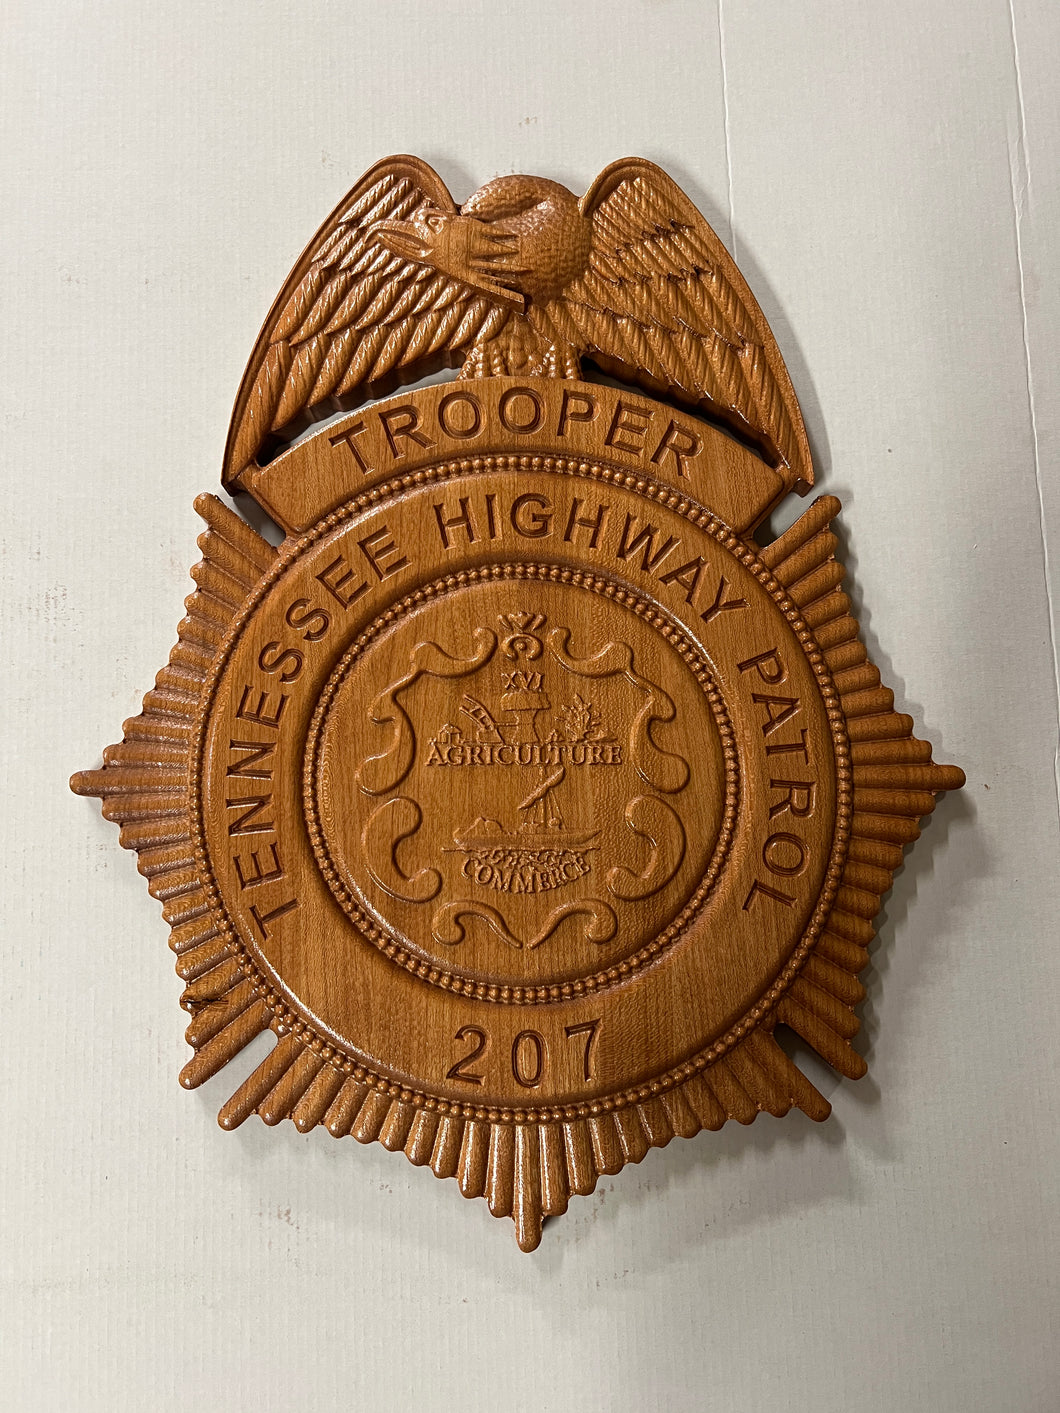 Tennessee Highway Patrol THP State Trooper Badge